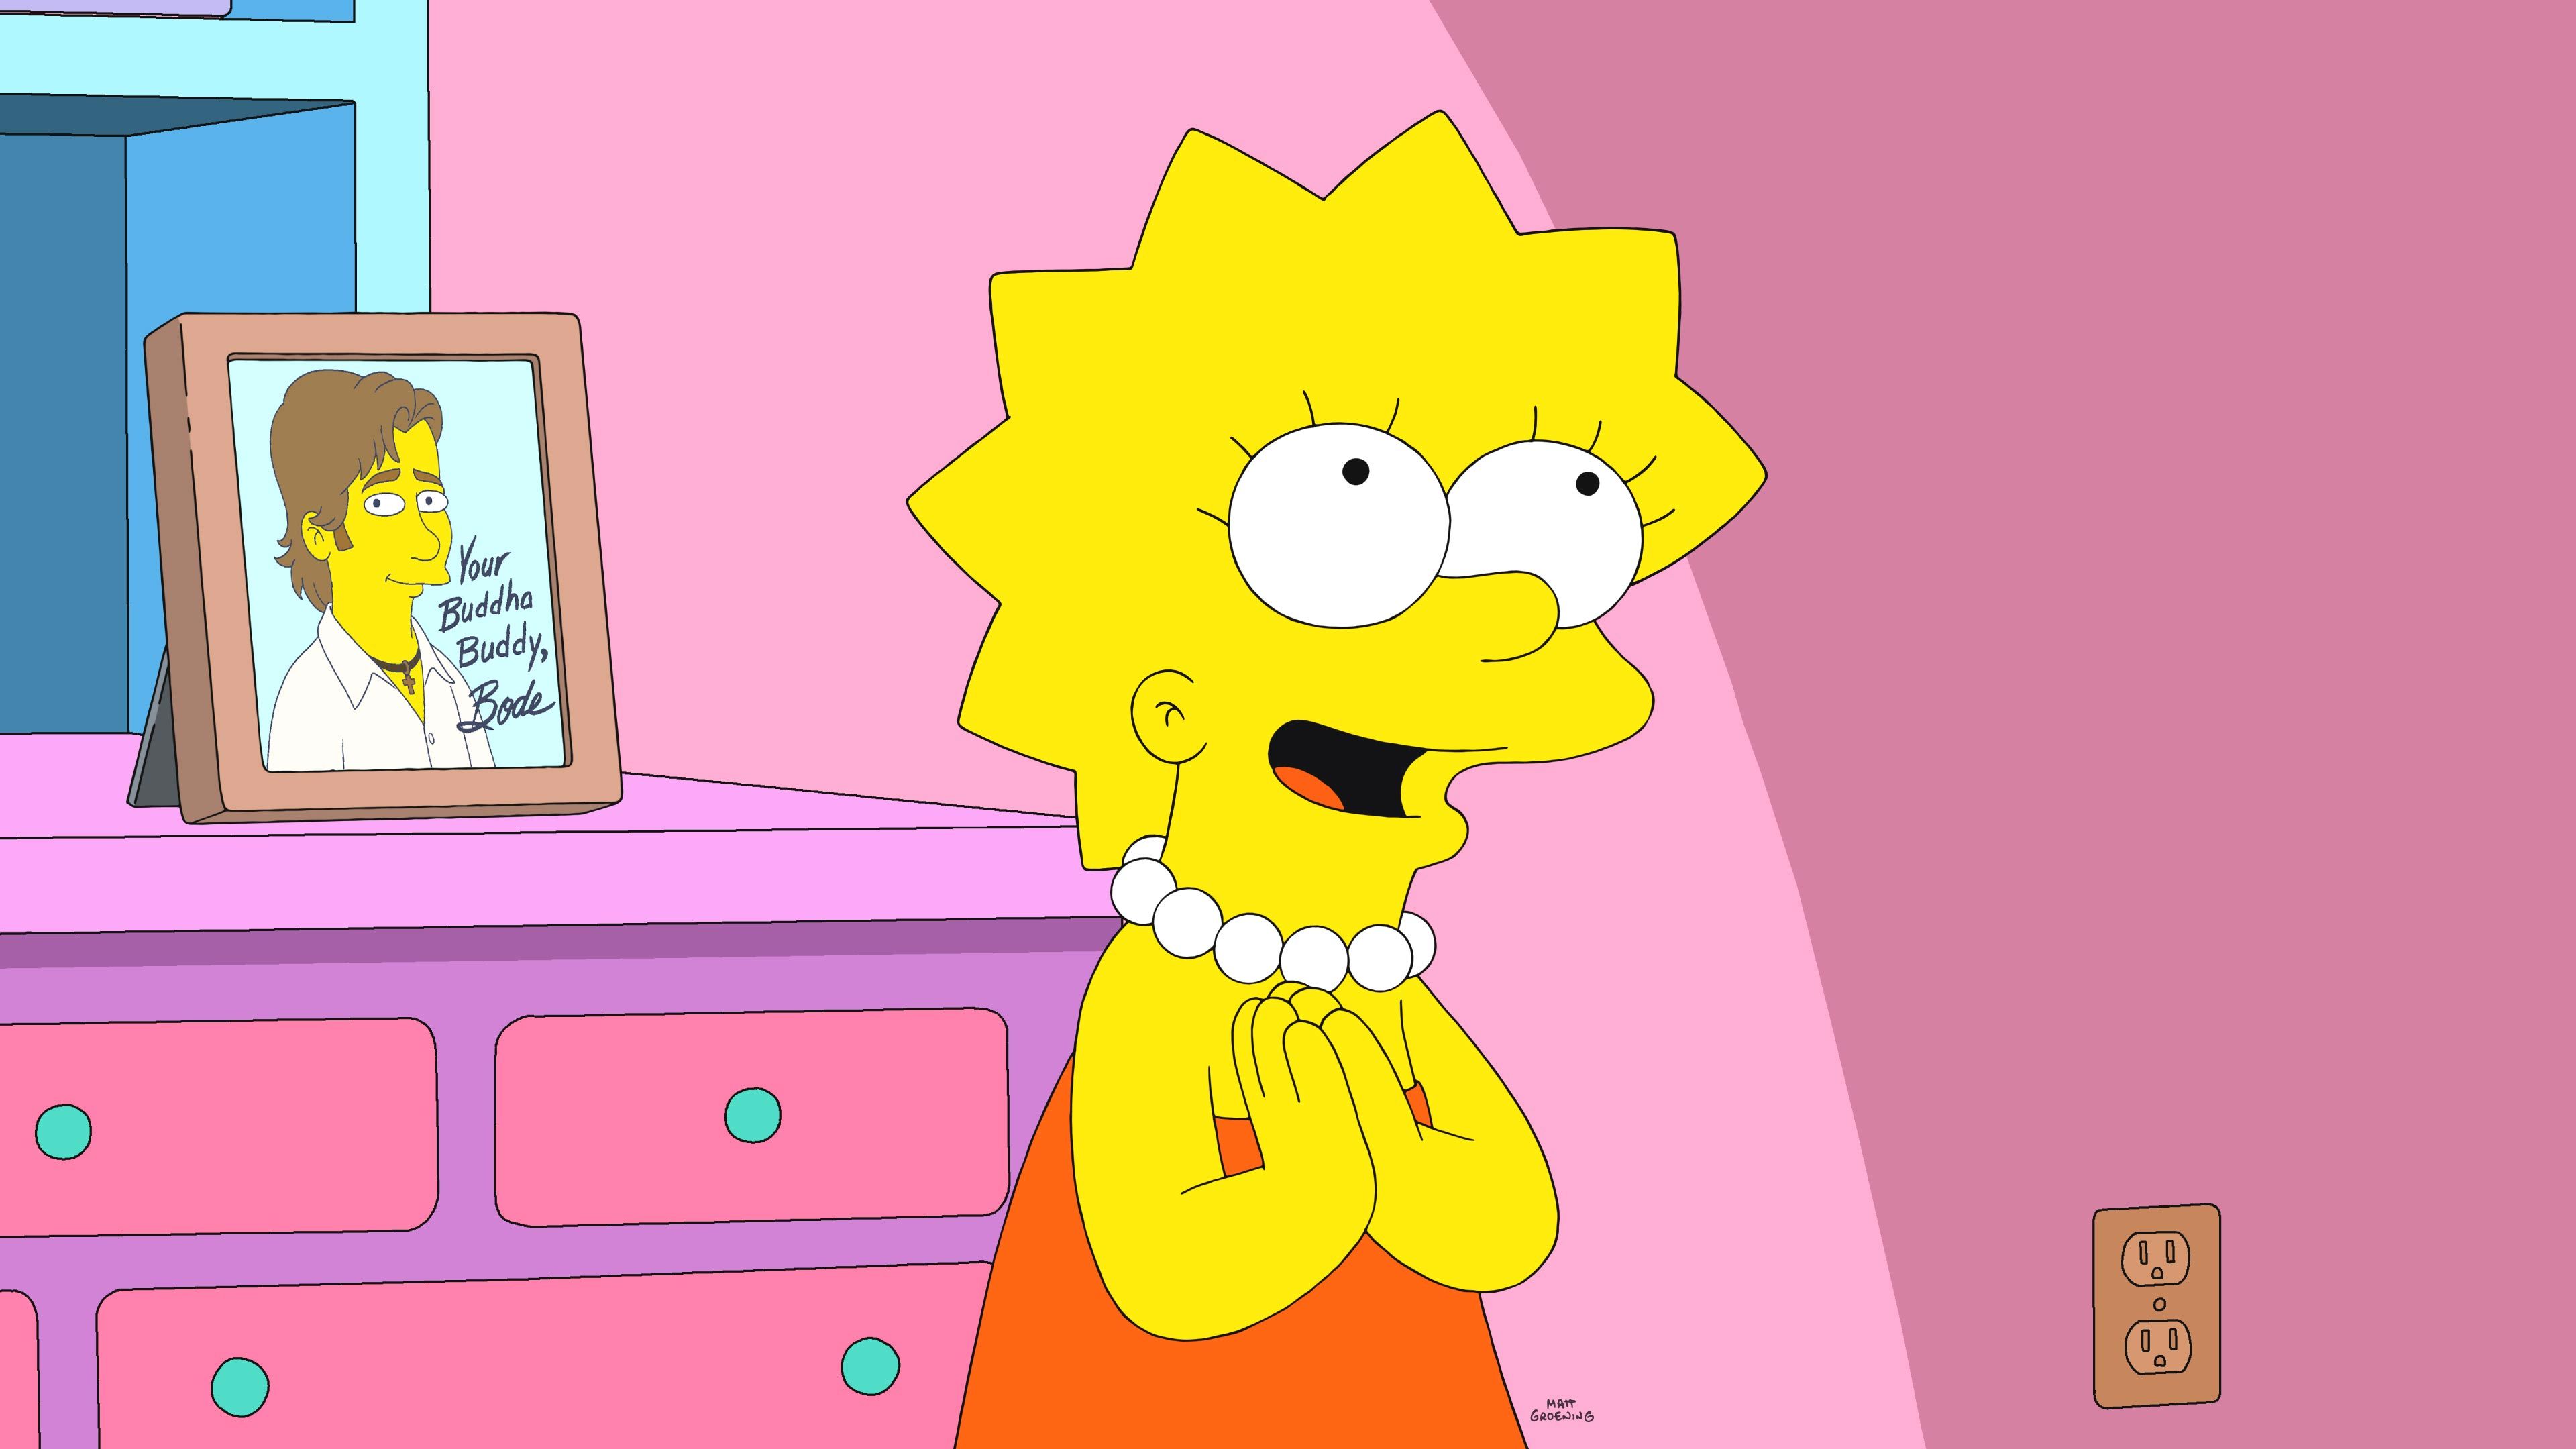 Fantástico Vaciar la basura Ortografía Es Lisa Simpson un personaje queer?